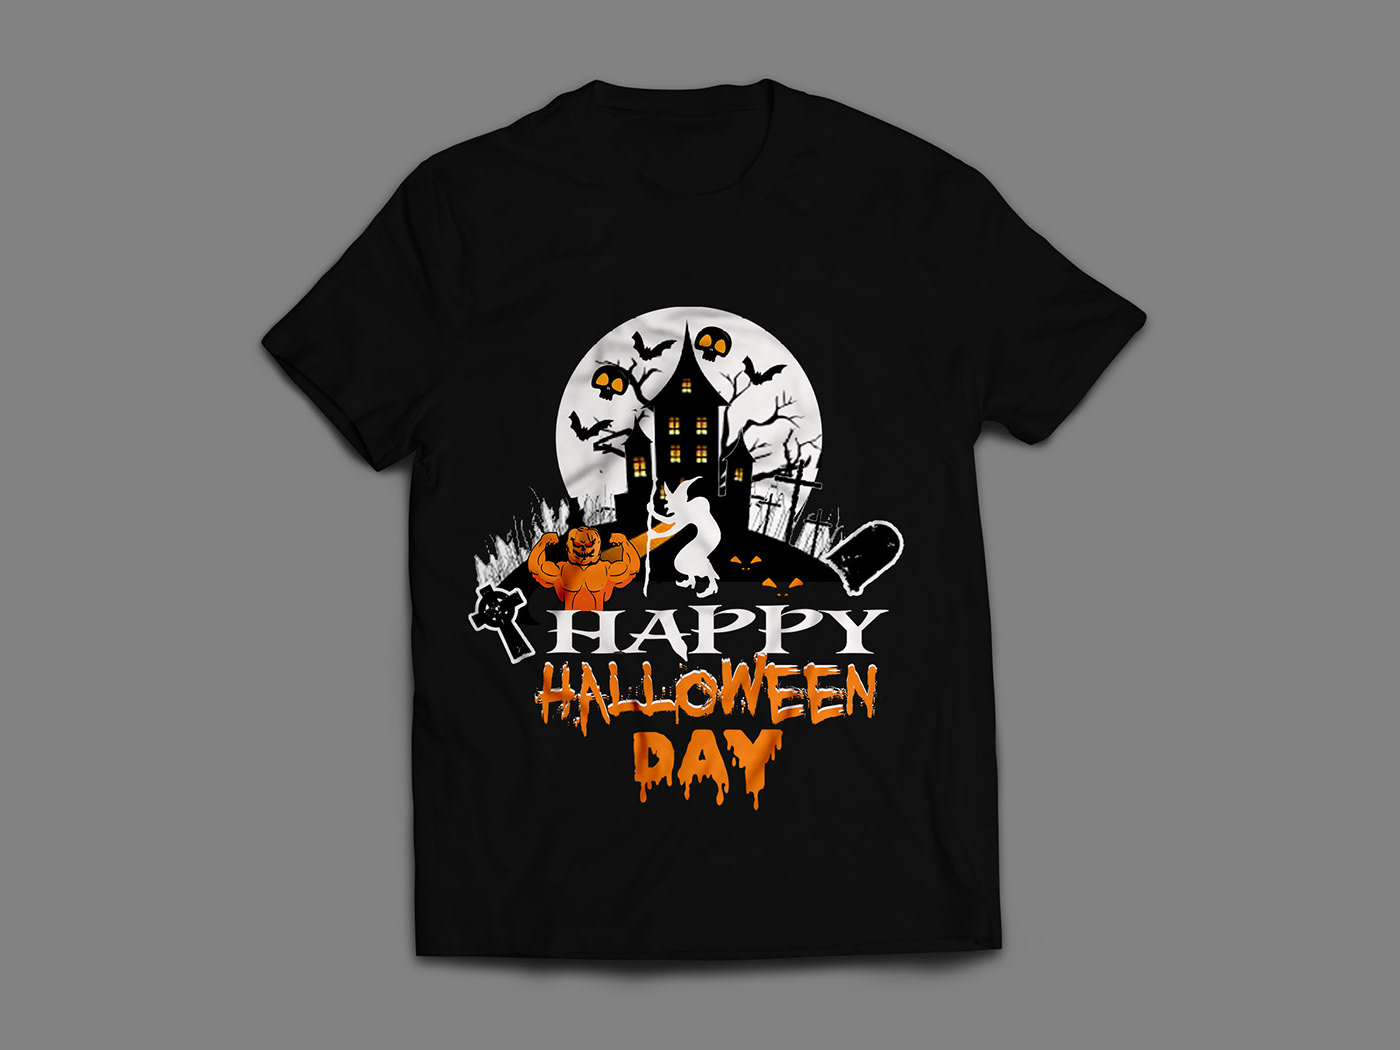 #halloweentshirt #halloween #Gym #TShirt  #funnyt shirt